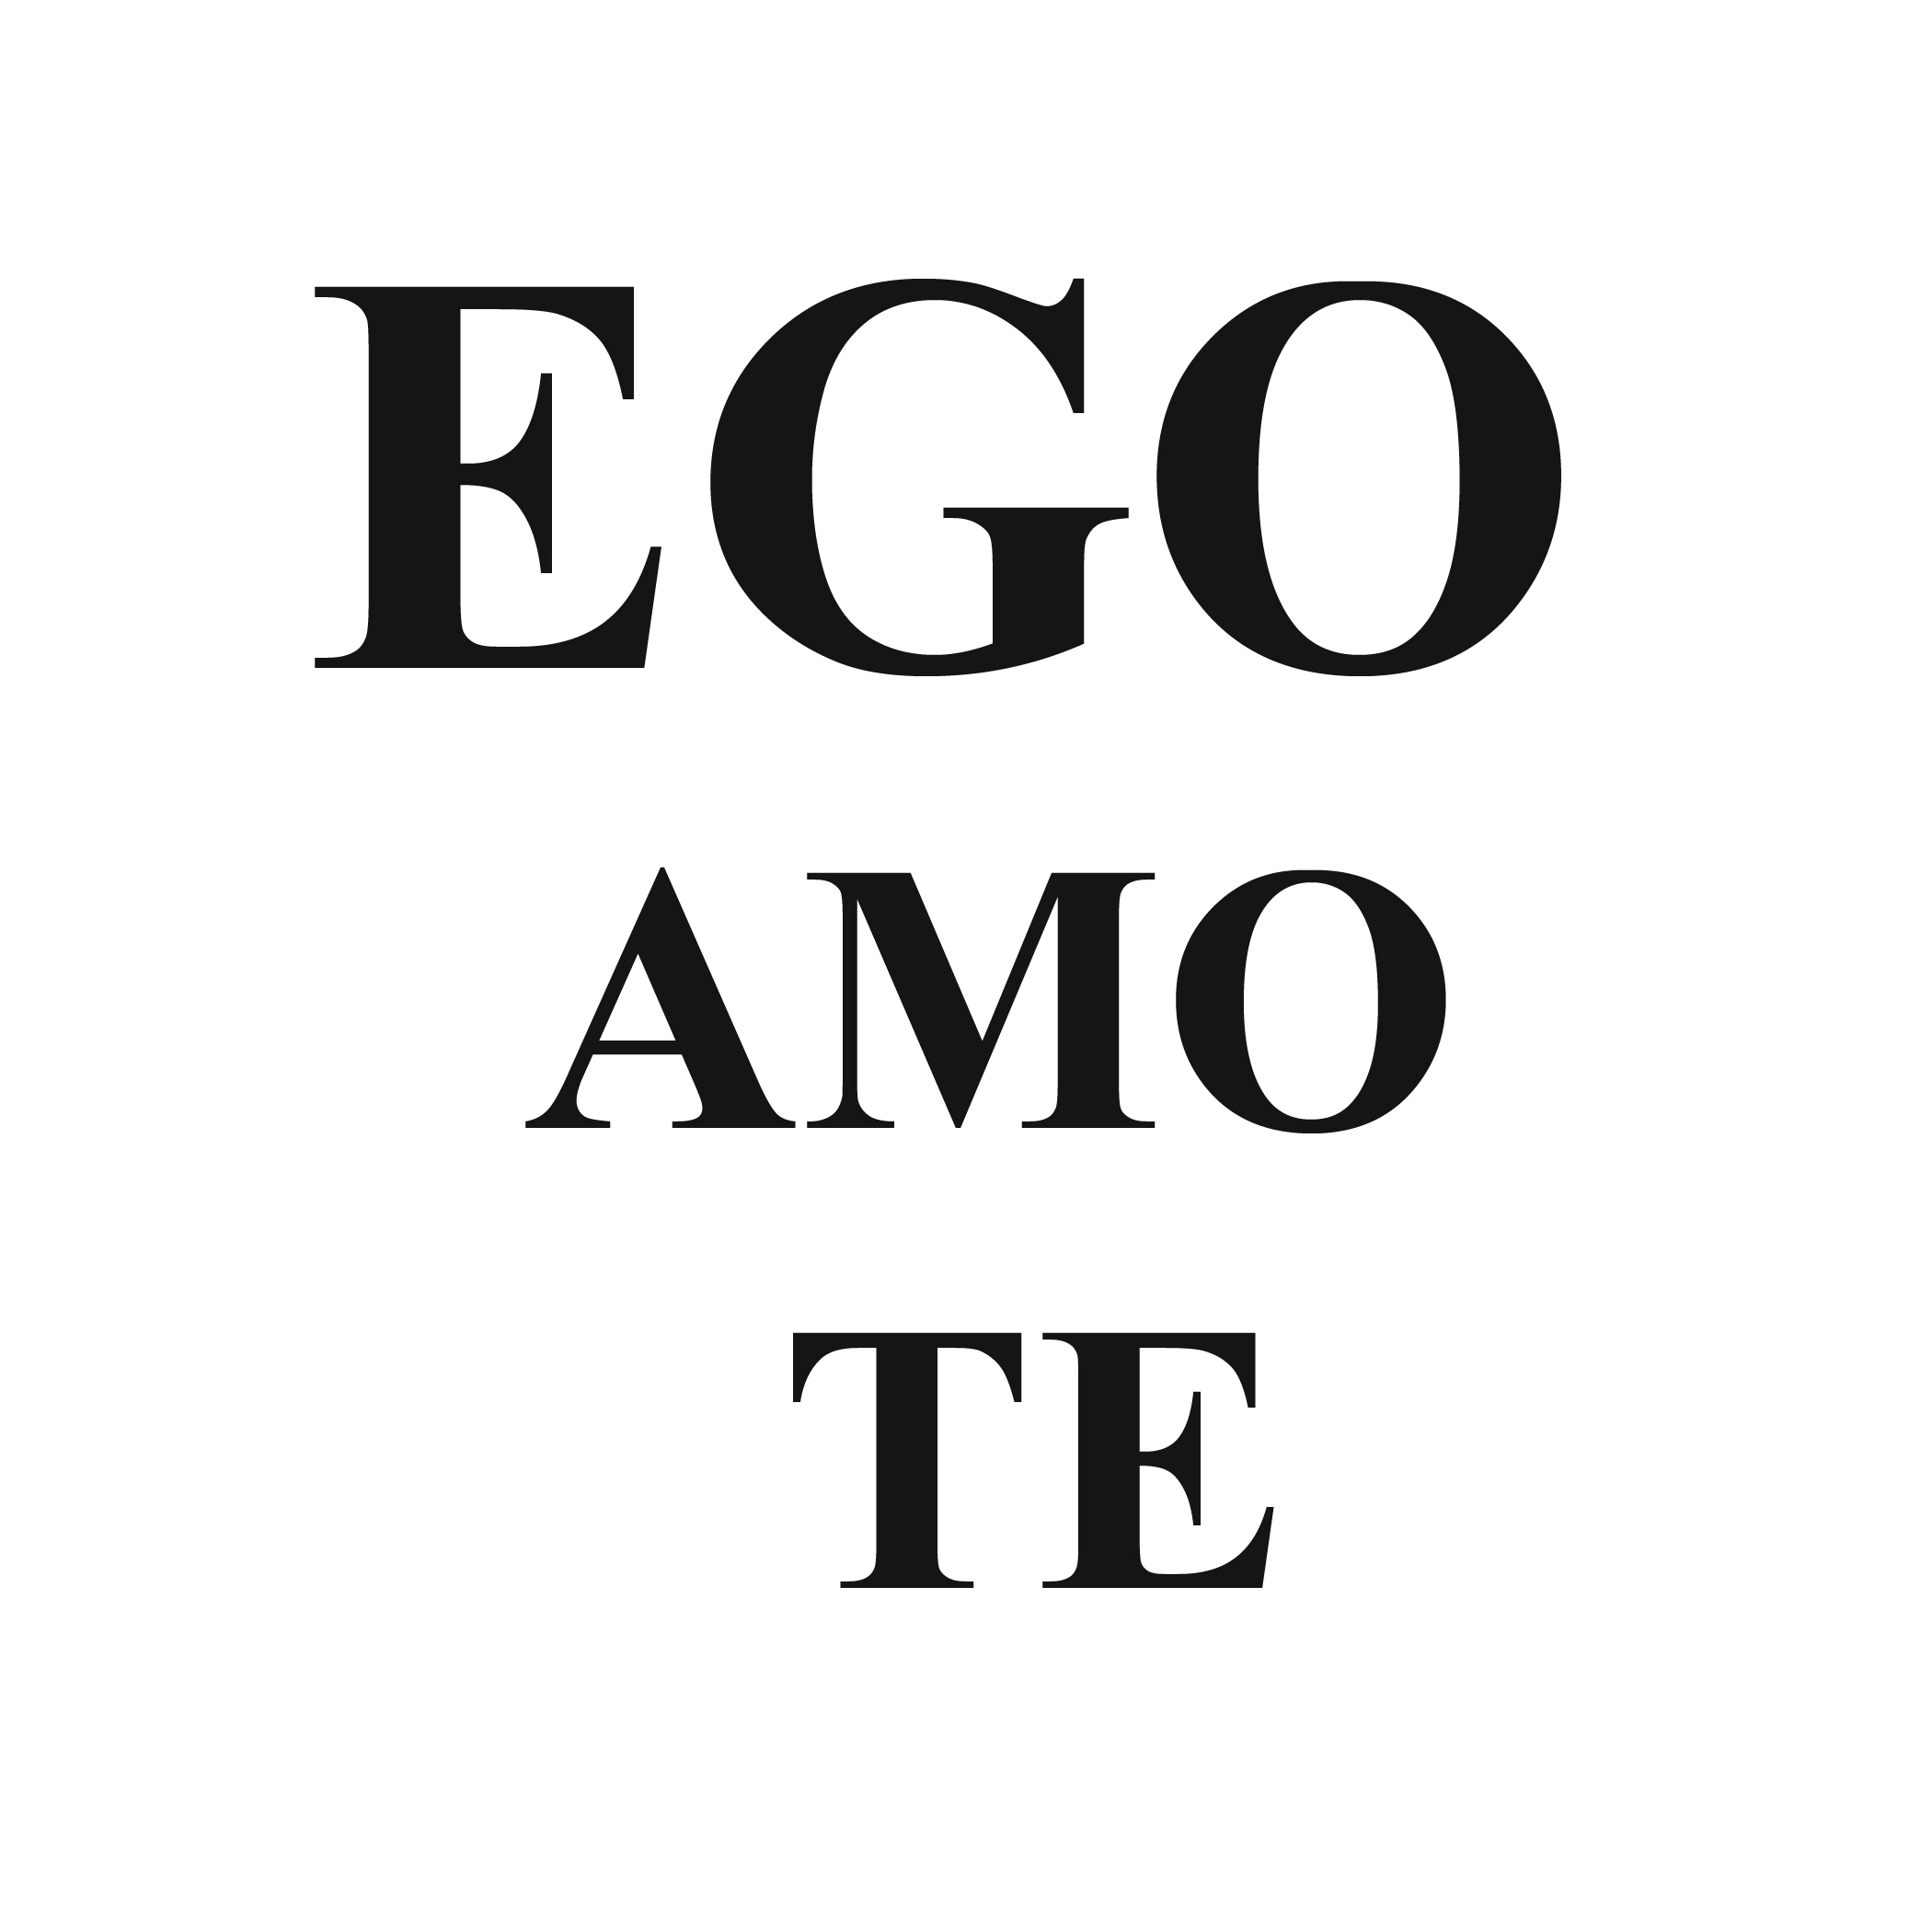 Ego Amo Te